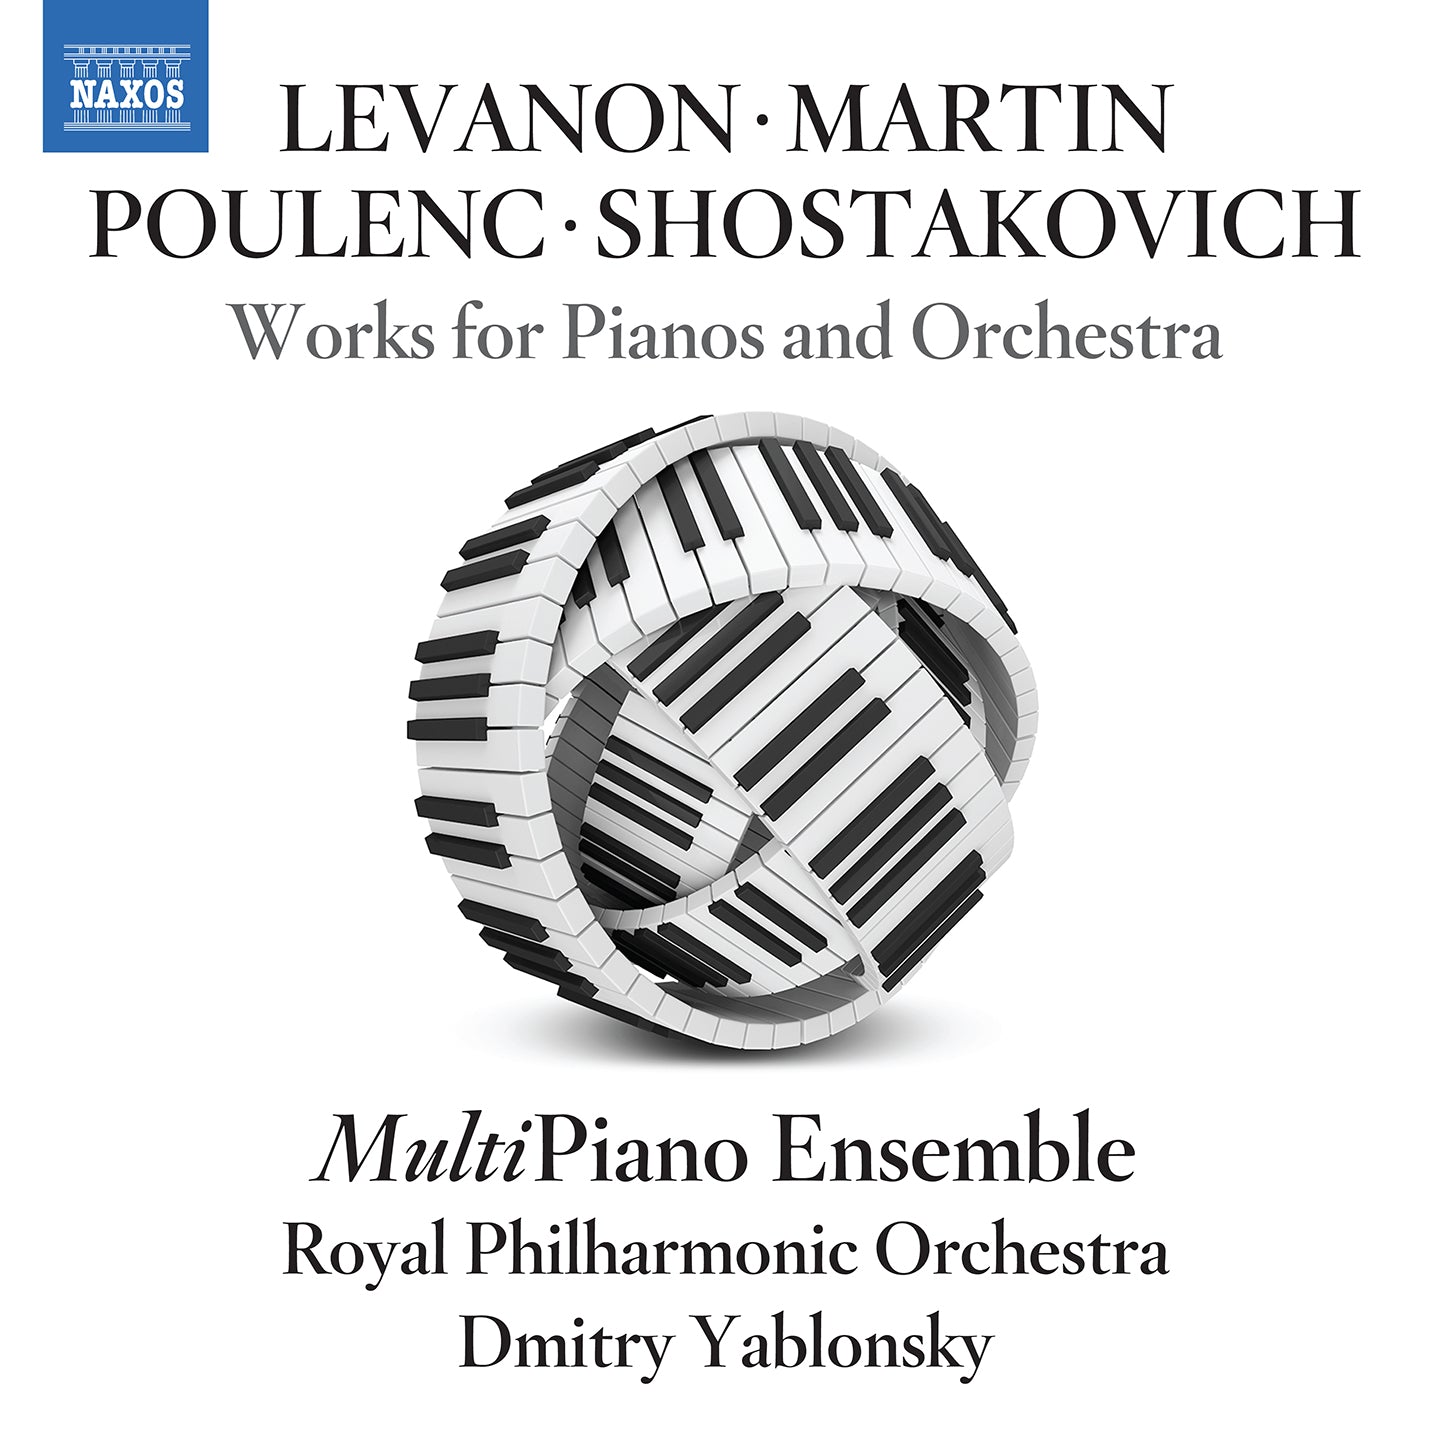 Poulenc, Shostakovich et al: Works for Pianos & Orchestra / MultiPiano Ensemble, RPO